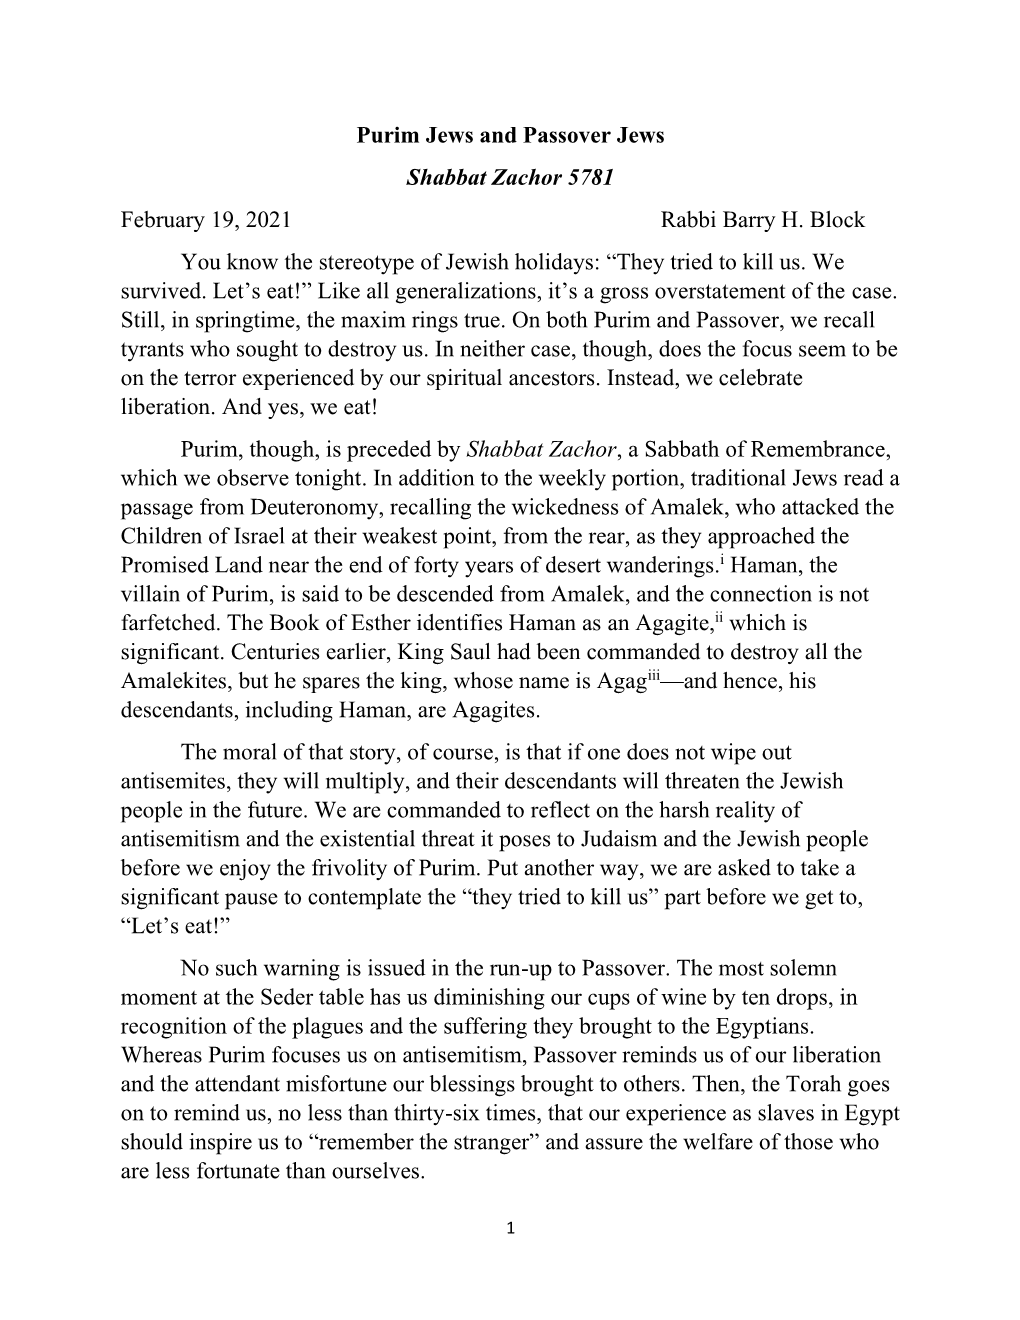 Purim Jews and Passover Jews Shabbat Zachor 5781 February 19, 2021 Rabbi Barry H